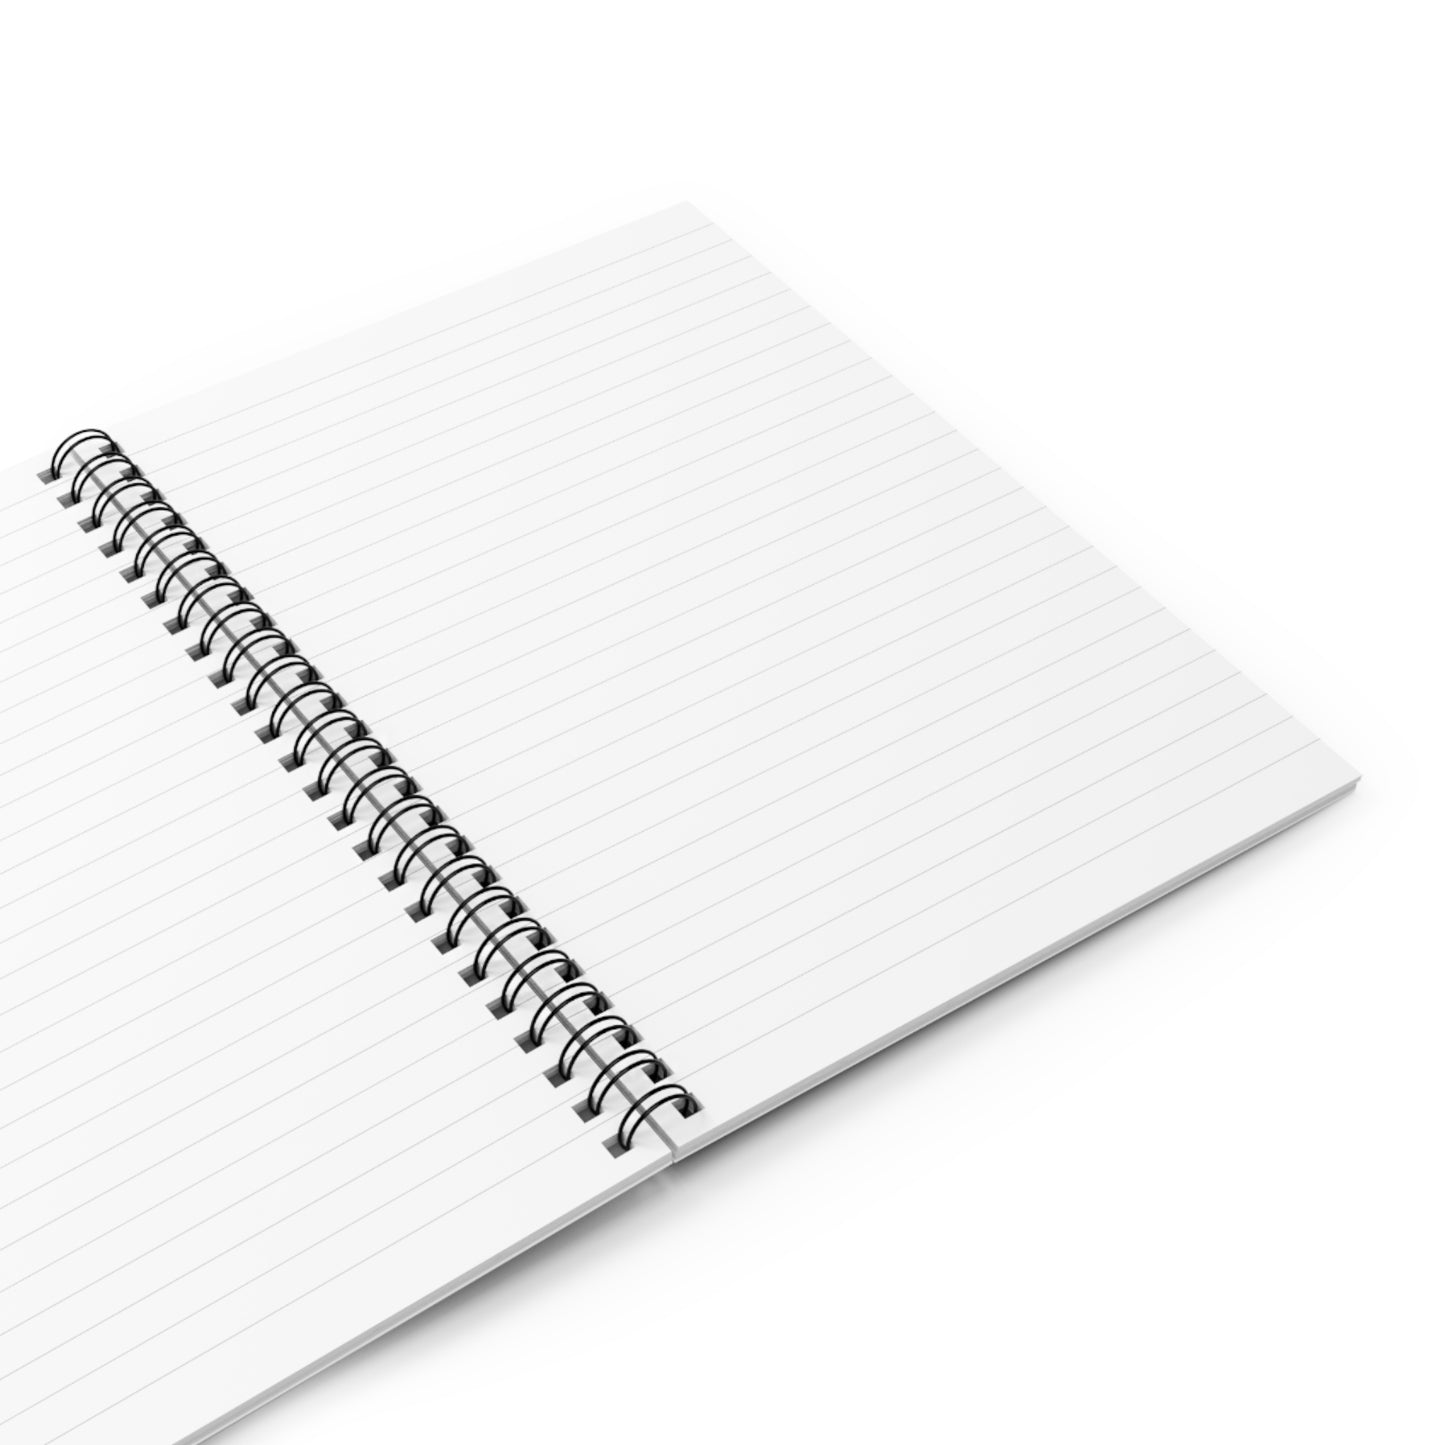 vetmedology Spiral Notebook - Ruled Line